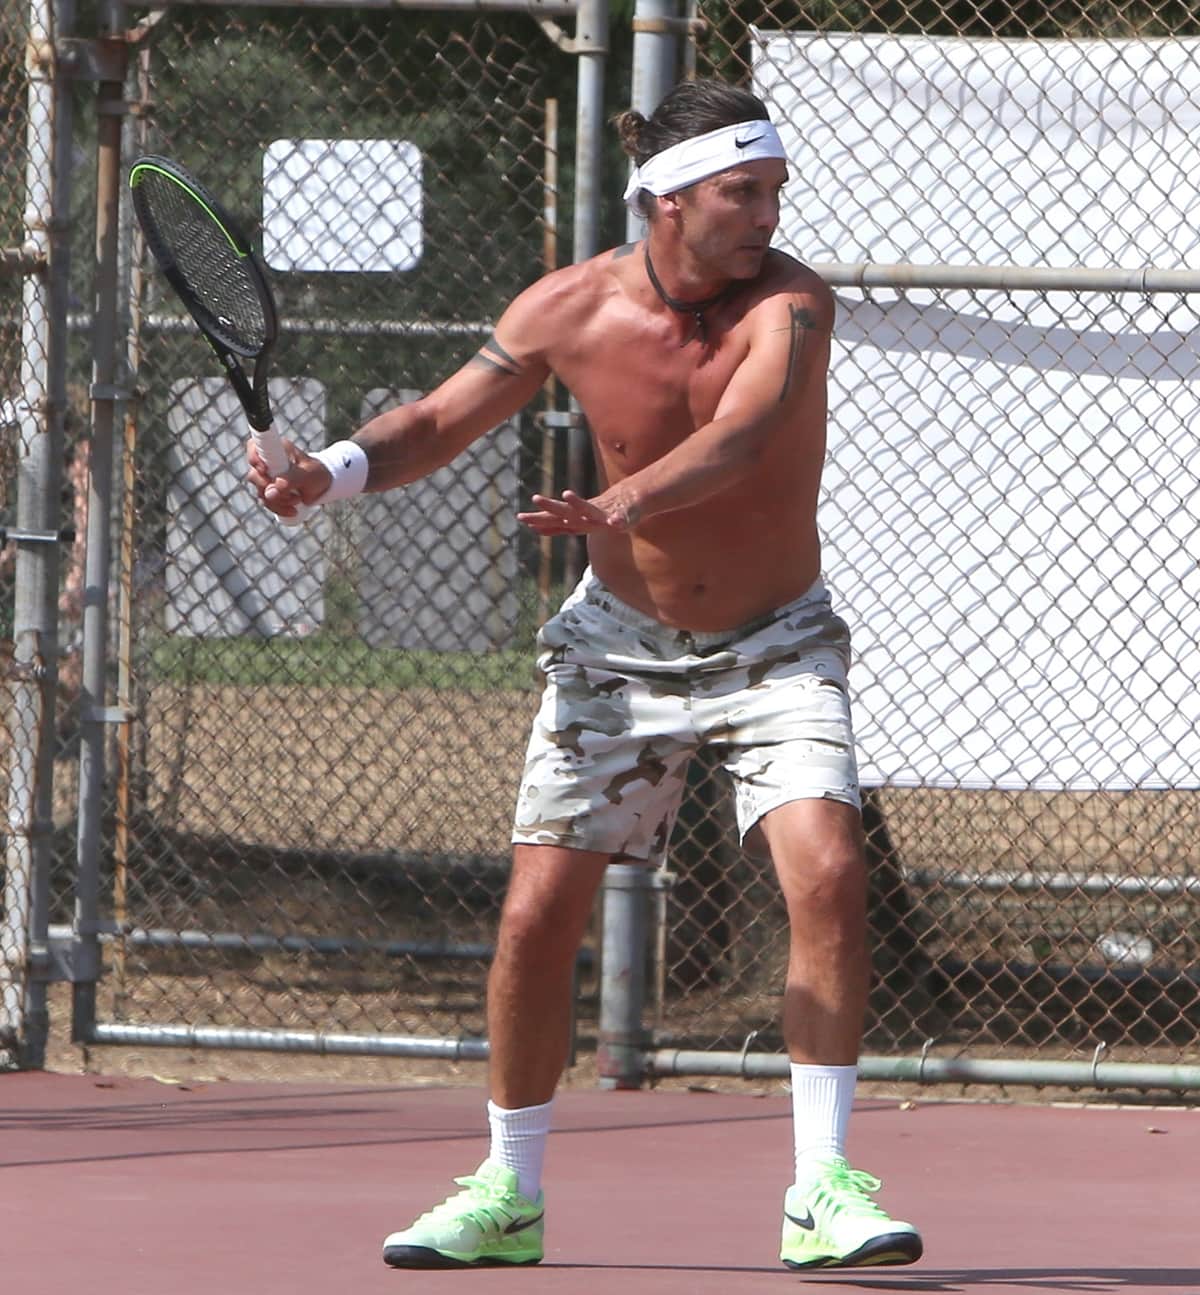 Gwen Stefani's ex-husband Gavin Rossdale goes shirtless as he plays tennis in Los Angeles